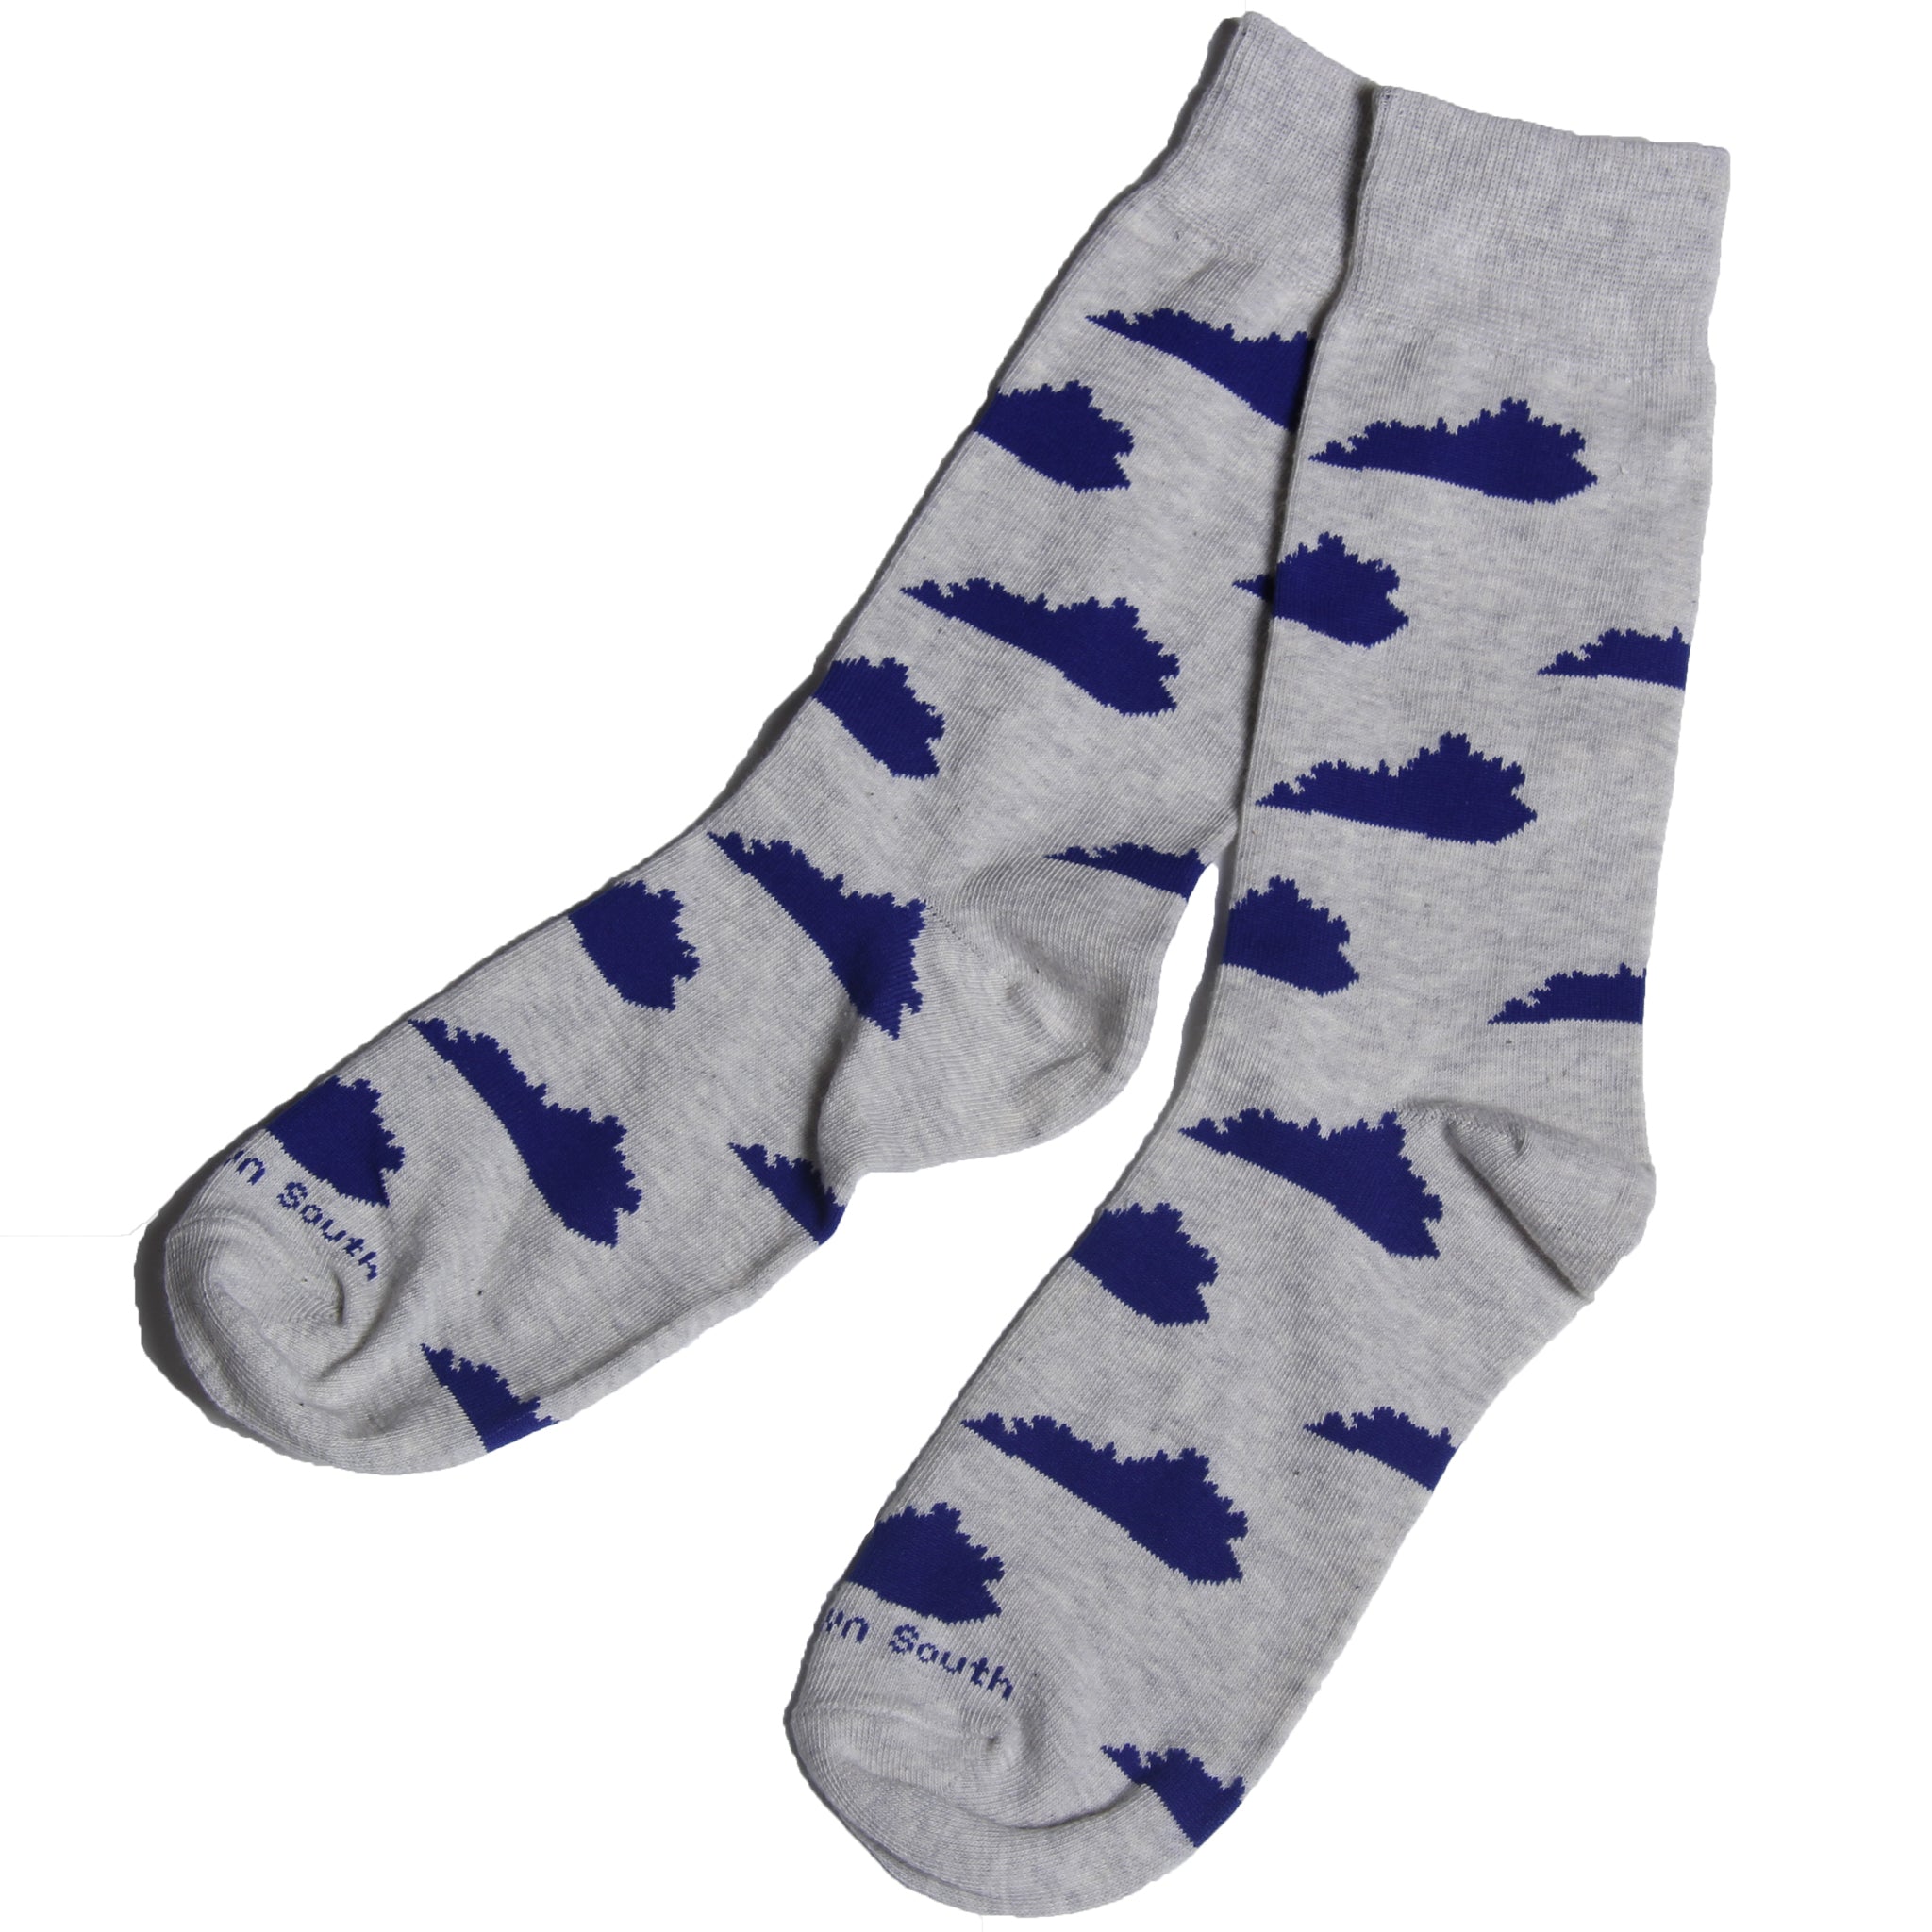 Grey/Blue KY Socks - Barrel Down South